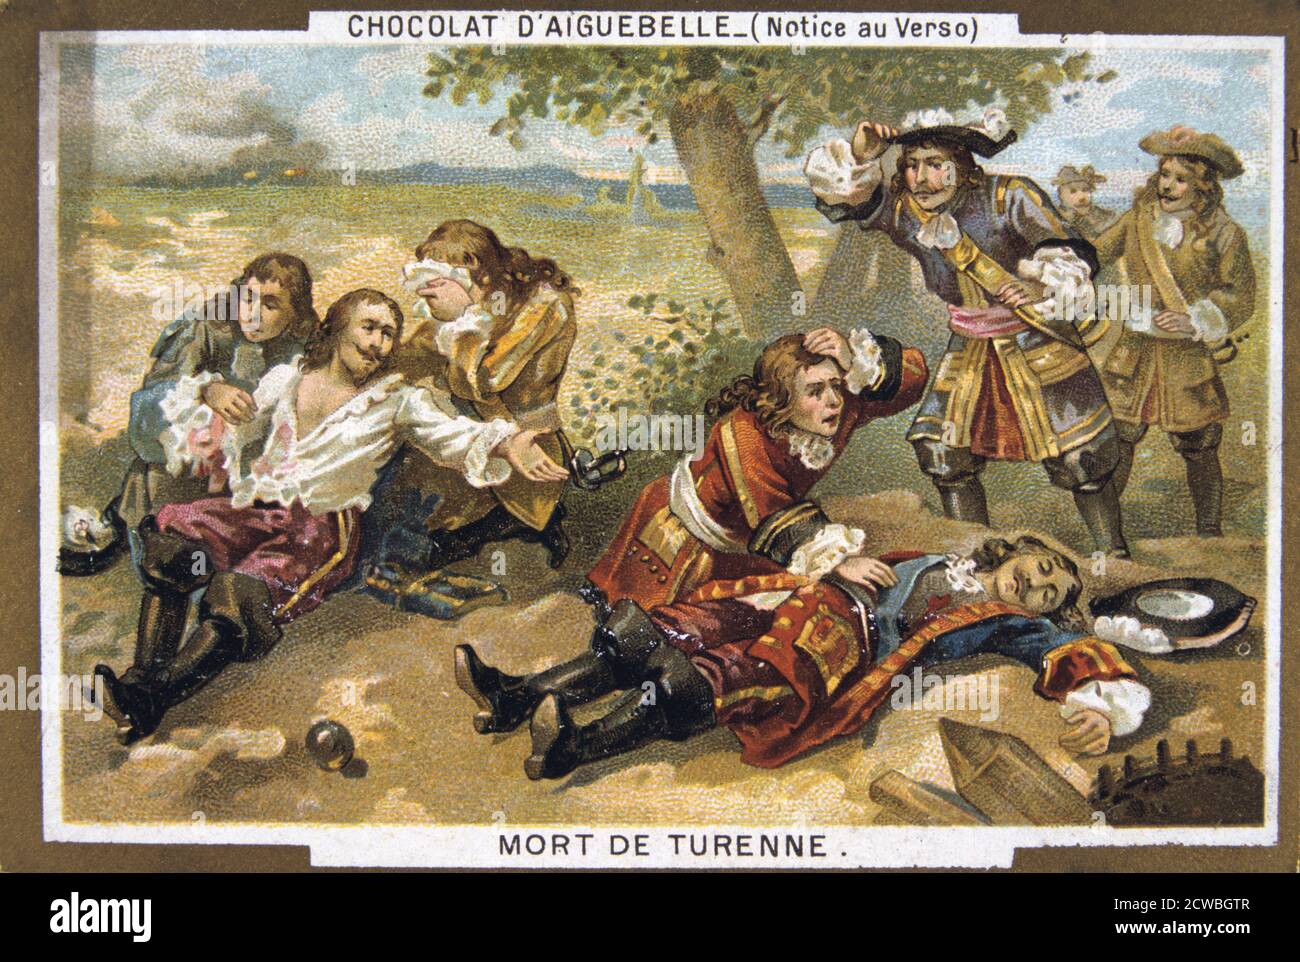 La morte del maresciallo Turenne, 1675, (xix secolo). Henri de La Tour d'Auvergne, Vicomte de Turenne (1611-1675), uno di Francia più grandi leader militari, è stato ucciso nella battaglia di Sasbach in Germania. Scheda prodotto dalla fabbrica di cioccolato presso il monastero trappista di Aiguebelle in Francia. Foto Stock